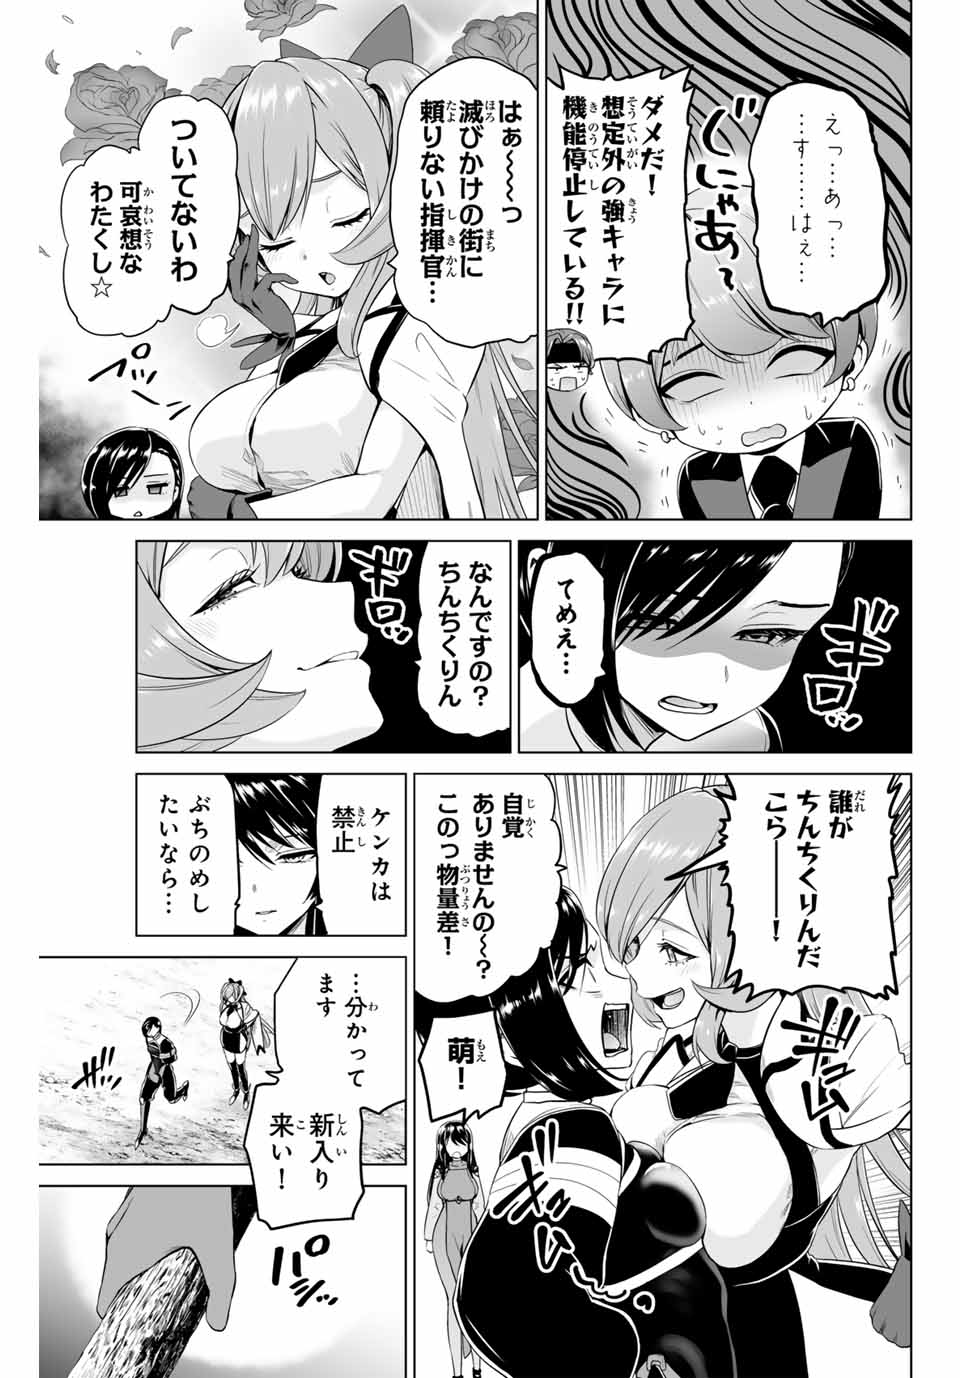 Gunshin No Takuto - Chapter 21 - Page 3